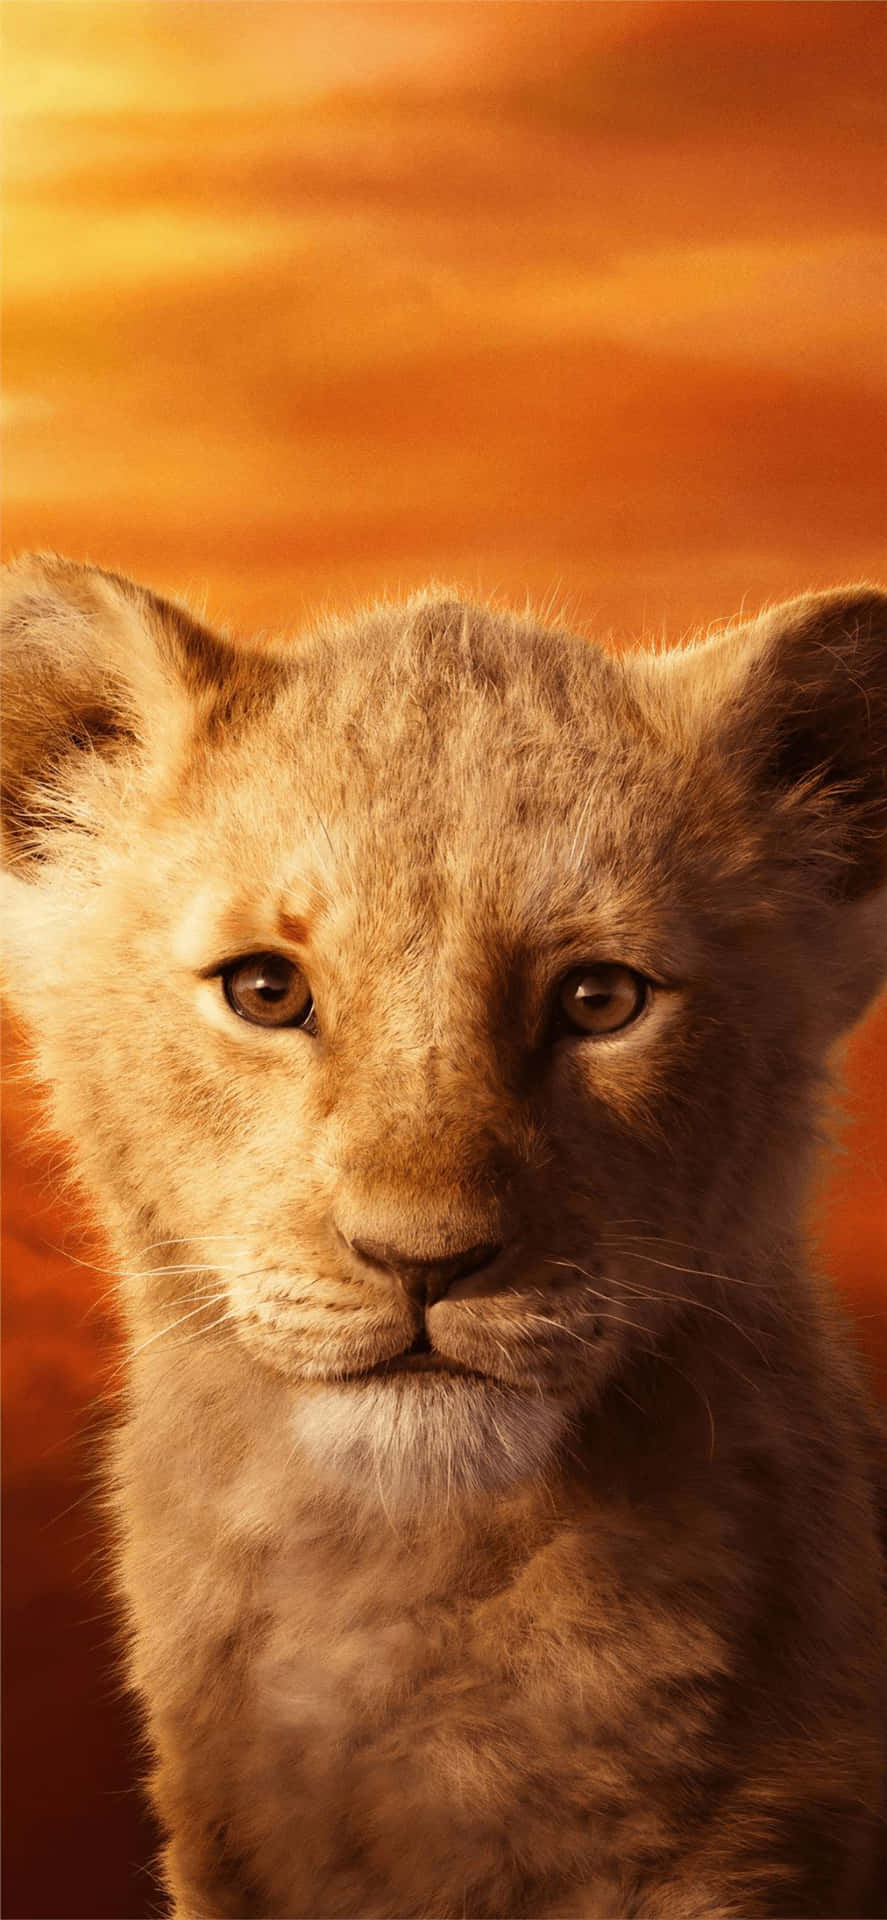 Young Lion Cub Portrait Background